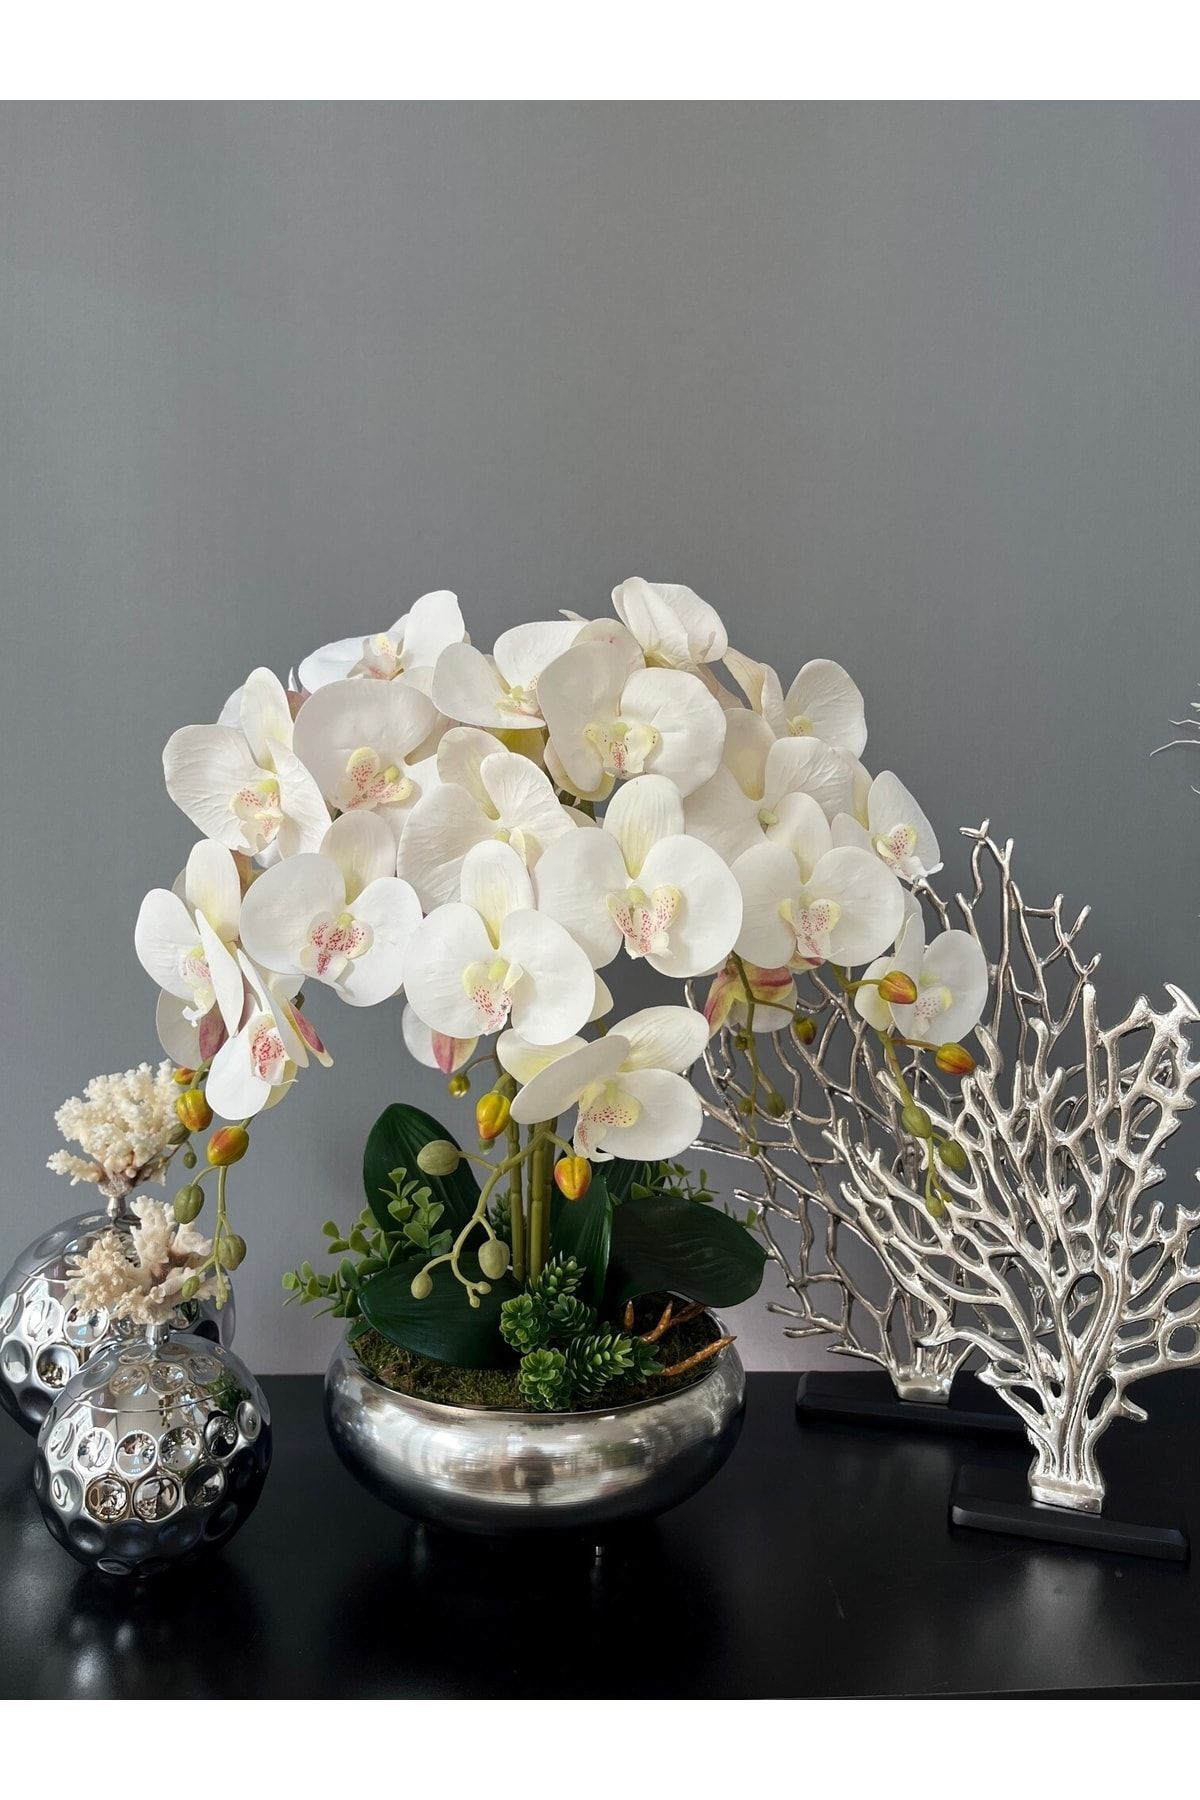 LİLOTEHOME Yapay Orkide 6 Dal Luxury Islak Beyaz Ufo Model Parlak Gümüş Renk Saksı